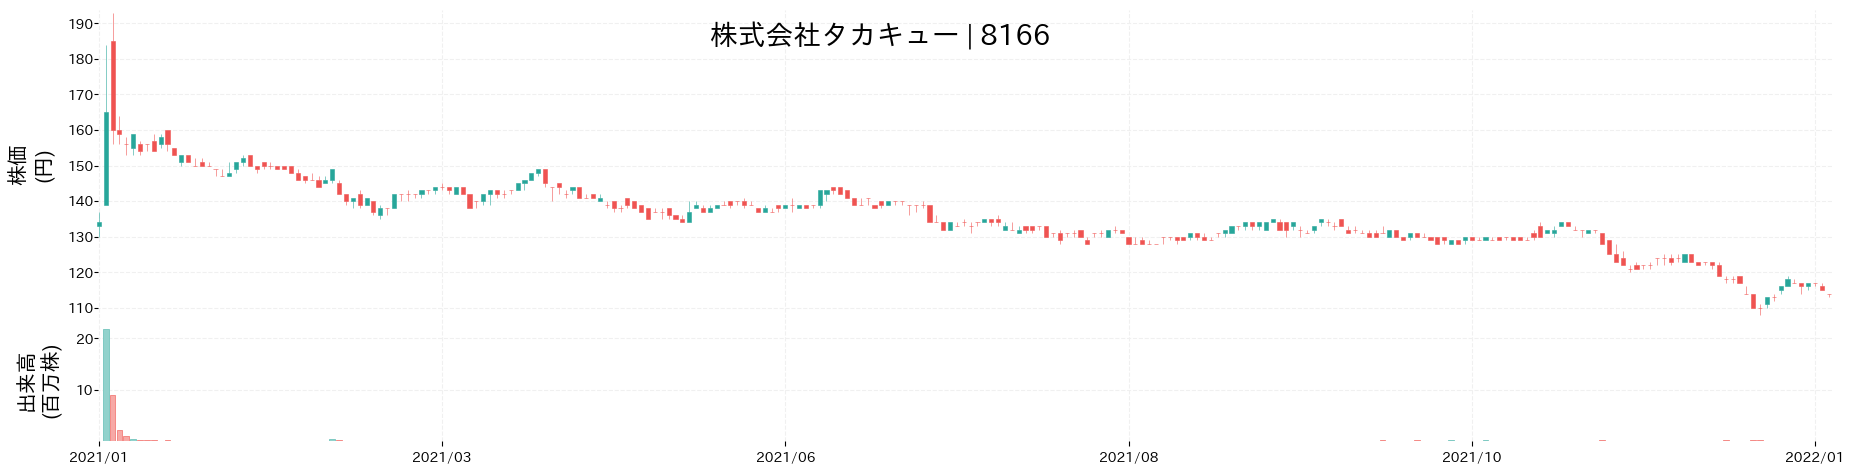 タカキューの株価推移(2021)